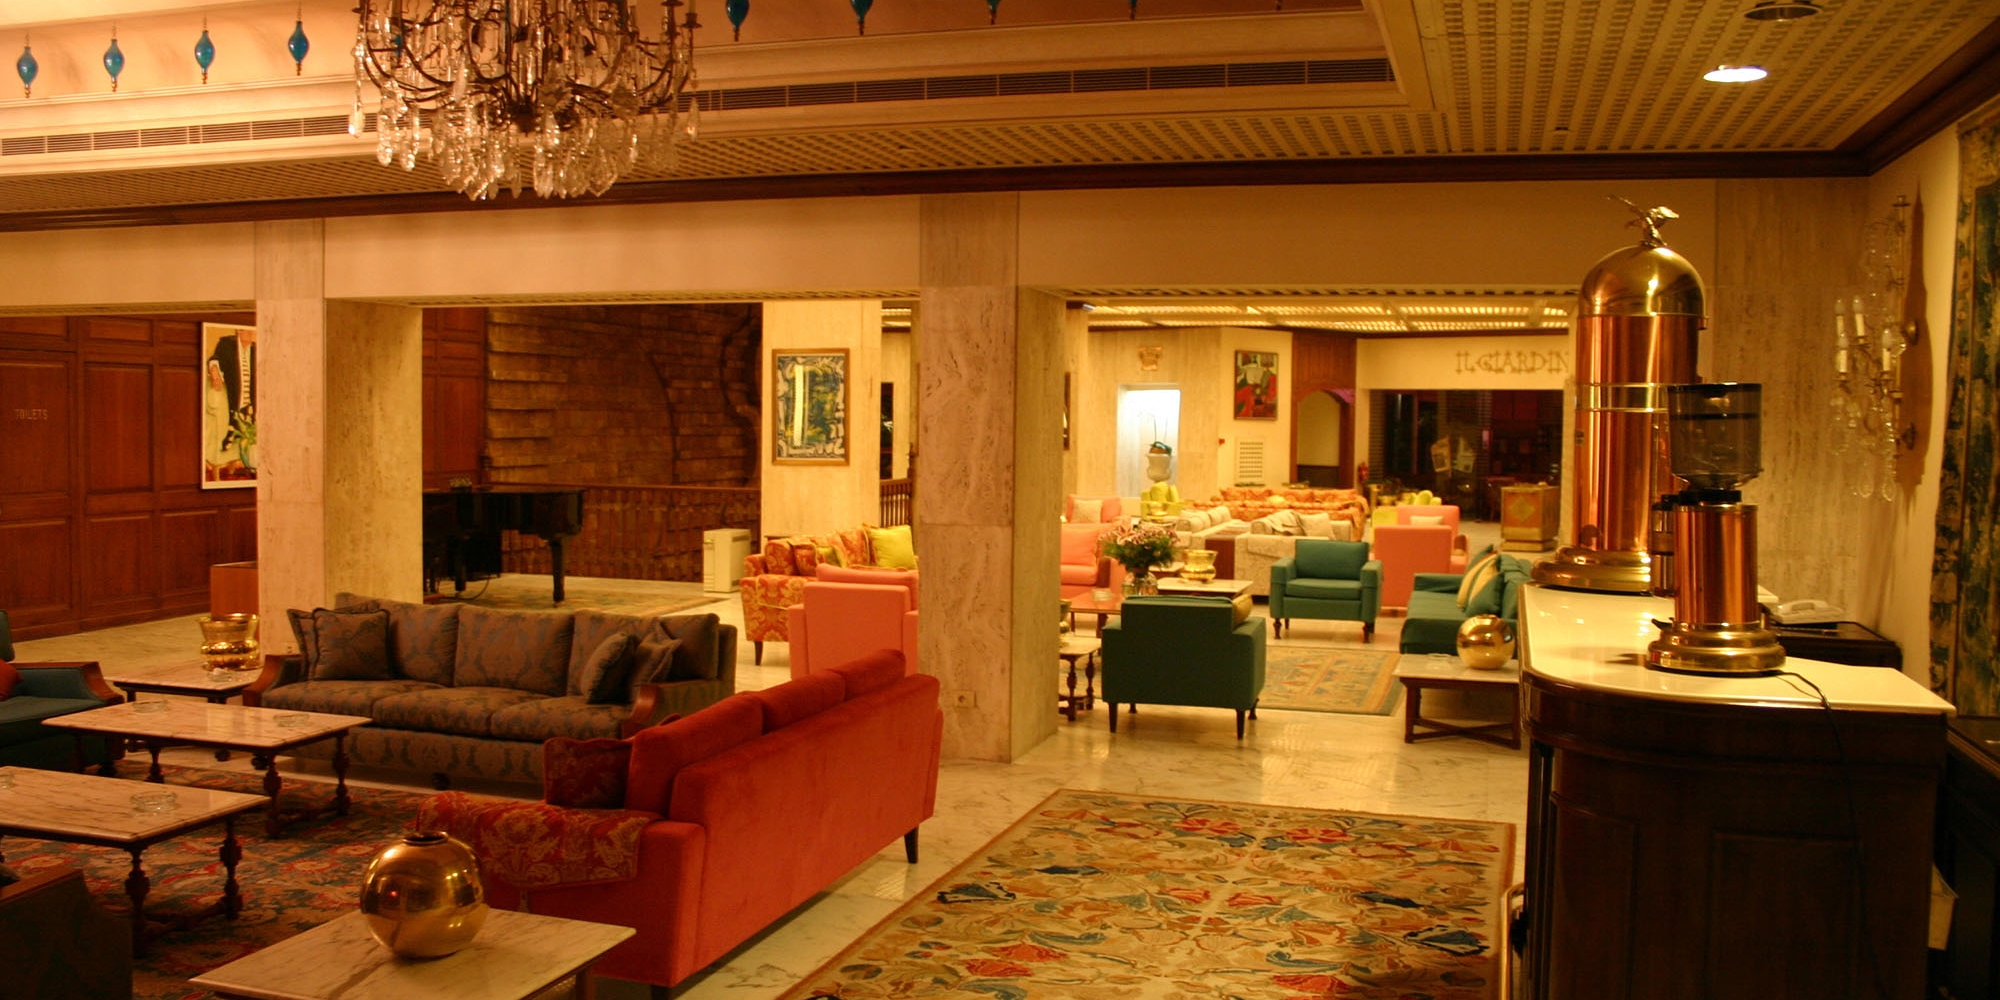 Hotel Blooms interior